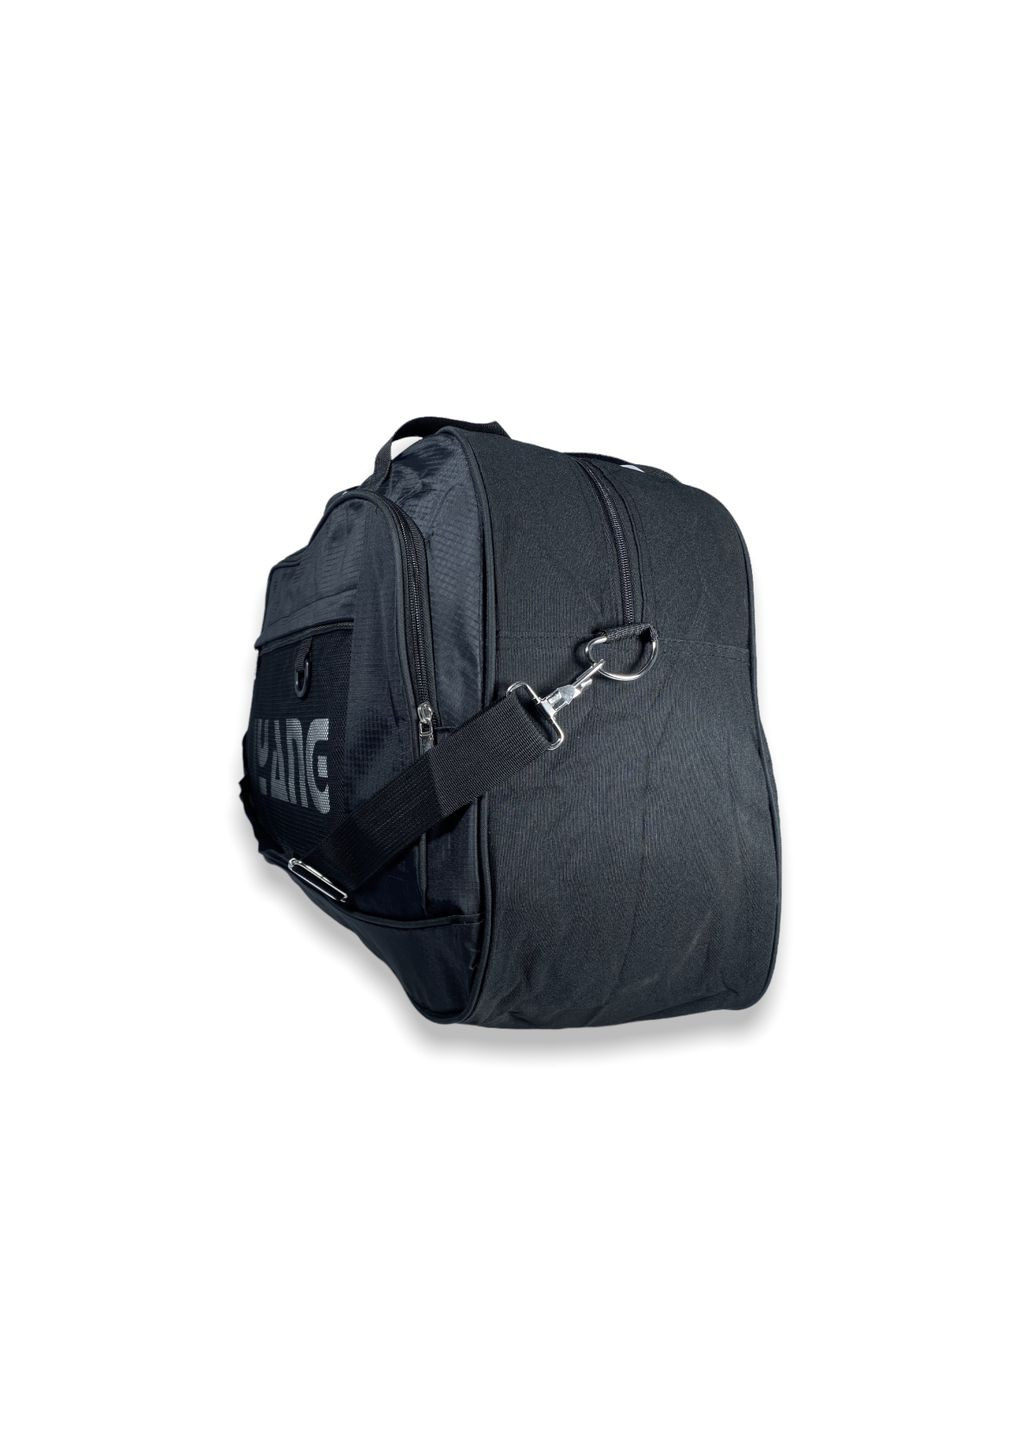 Дорожня сумка 52 л одне відділення додаткова кишеня розмір: 60*40*22 см чорна Liyang (266912154)